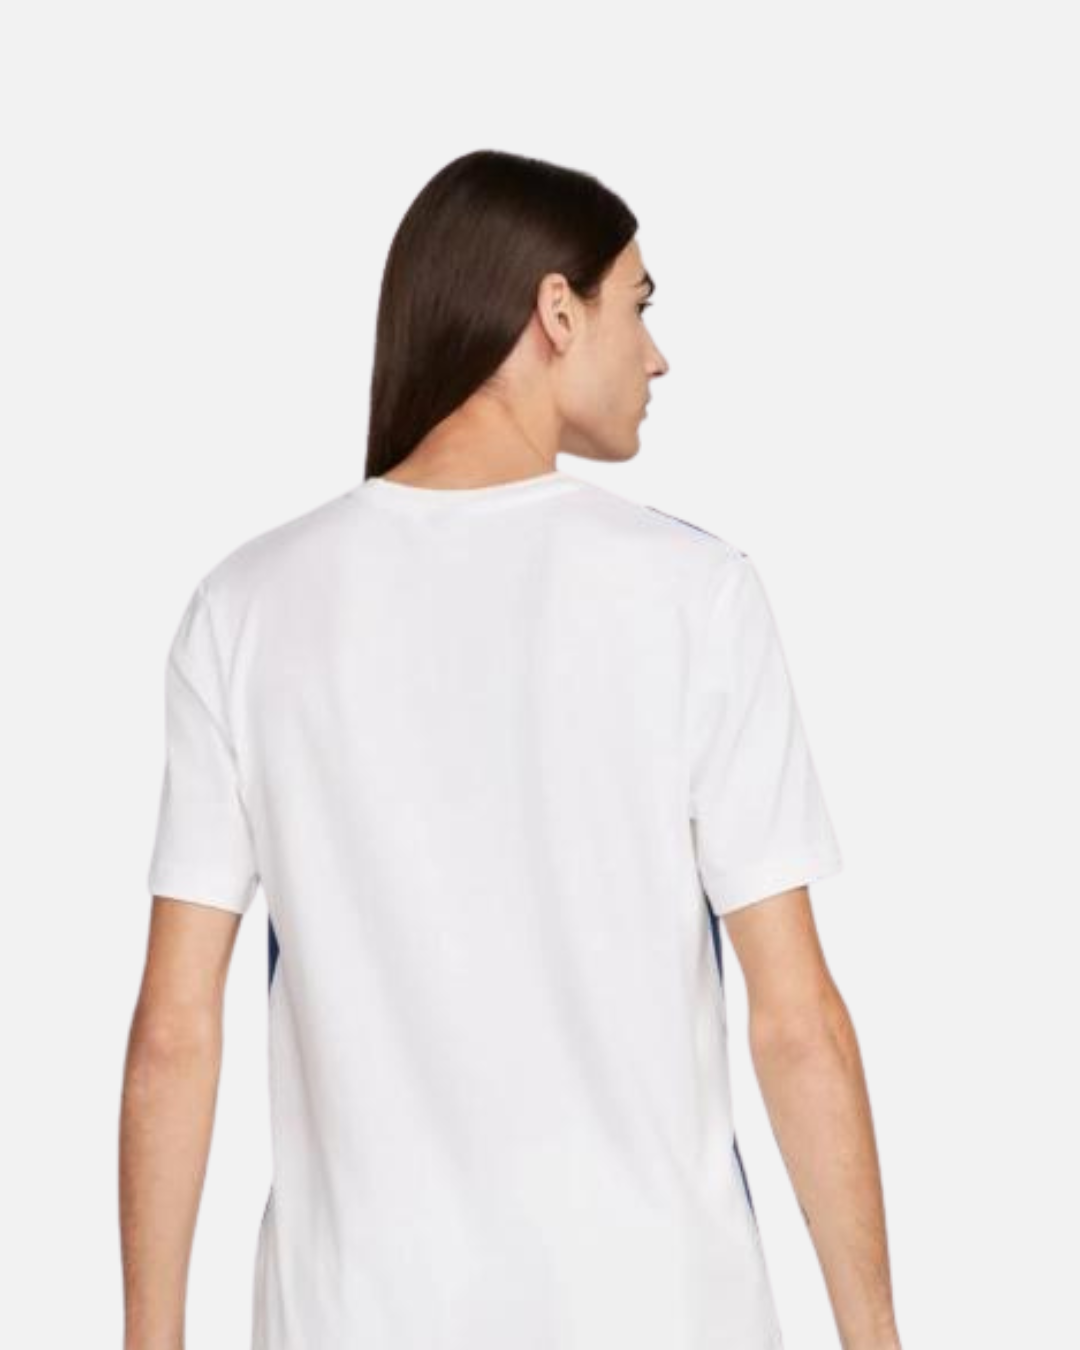 T-Shirt Nike Air - Blanc/Bleu